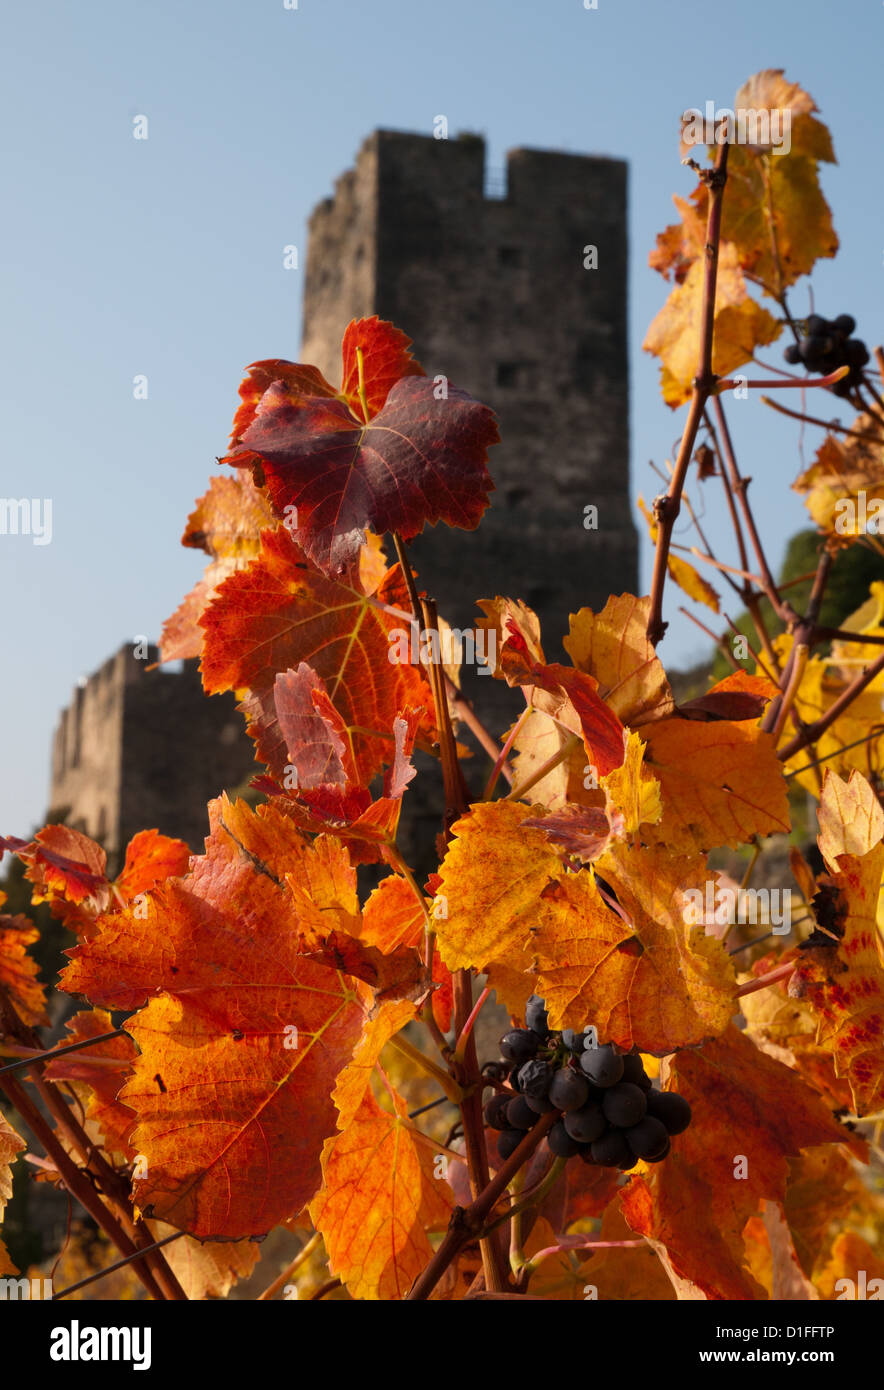 Racimo de uvas en el otoño de la cuesta que conduce al castillo Burg Gutenfels, Rin Kaub, Alemania Foto de stock